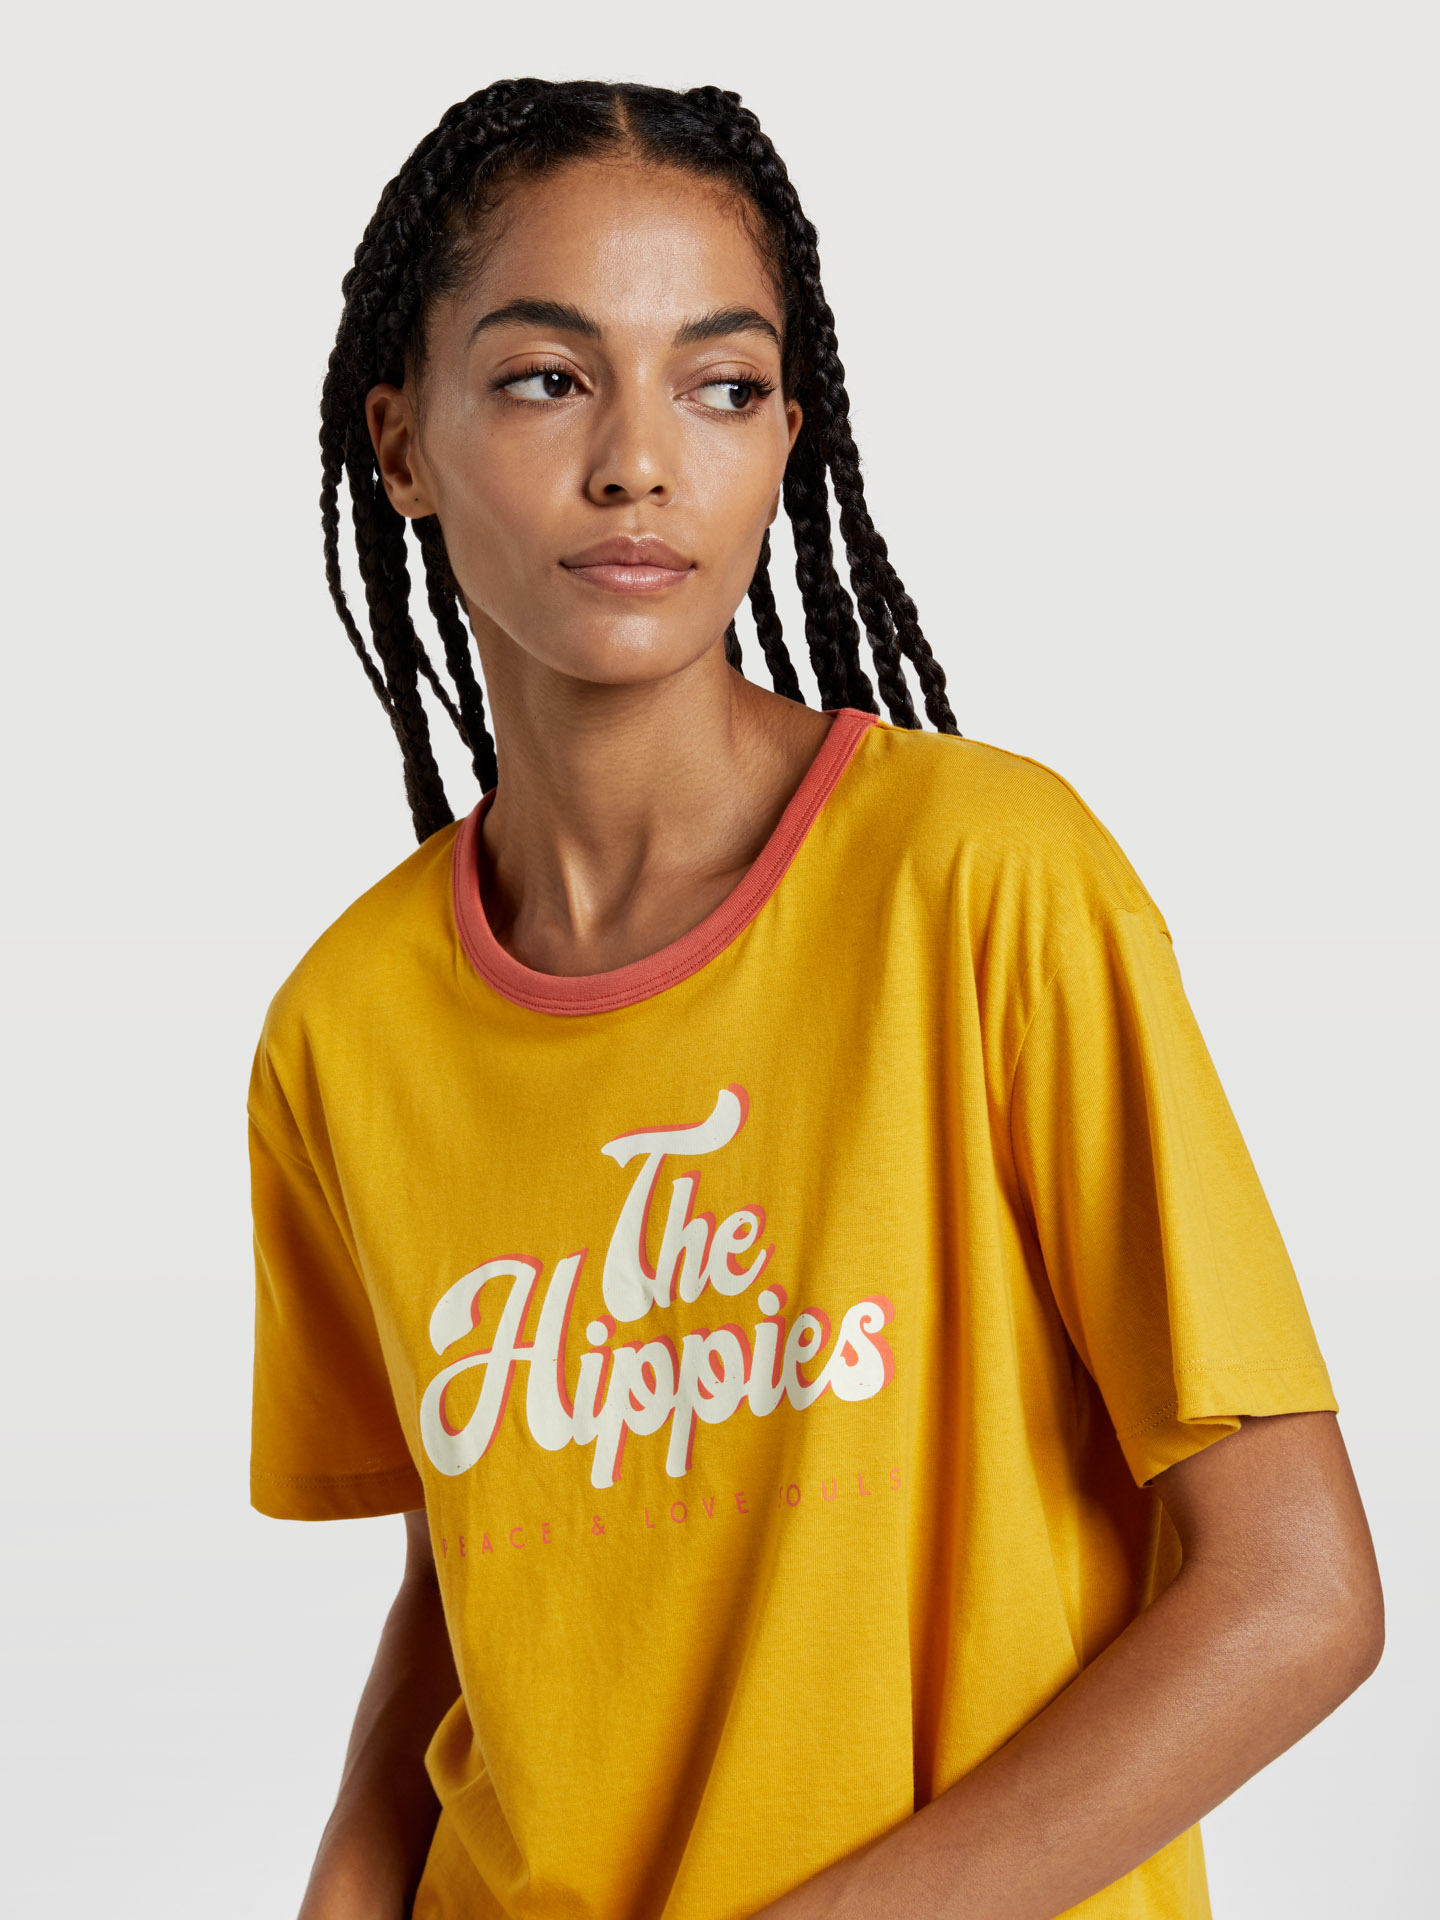 T-Shirt Yellow Casual Woman